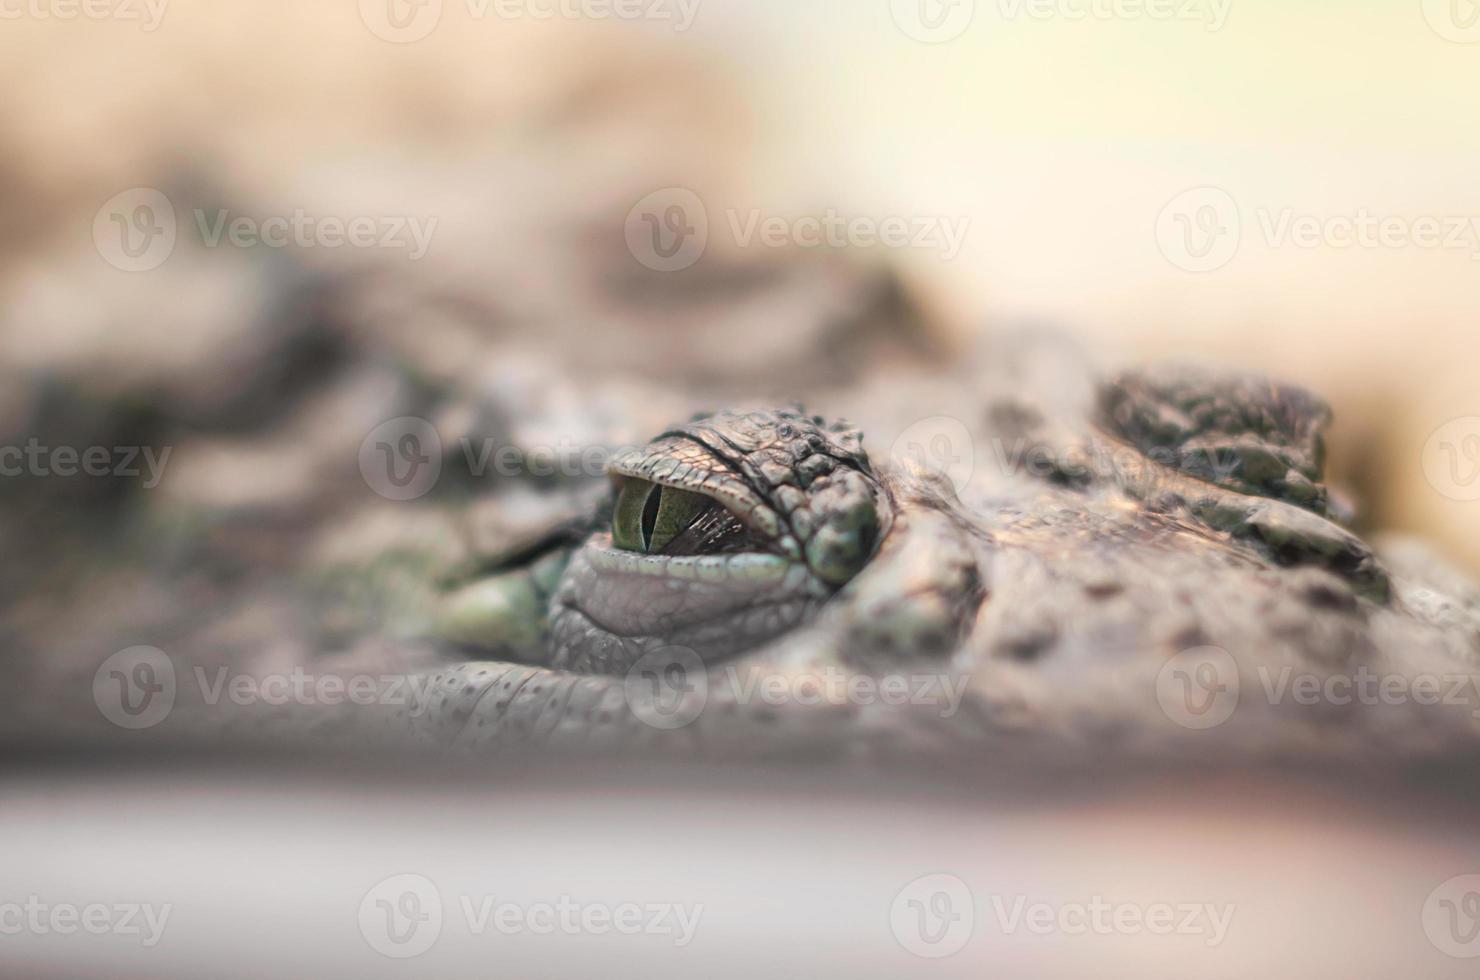 krokodilögon, farliga reptiler gömmer sig tittar och jagar på nära håll foto